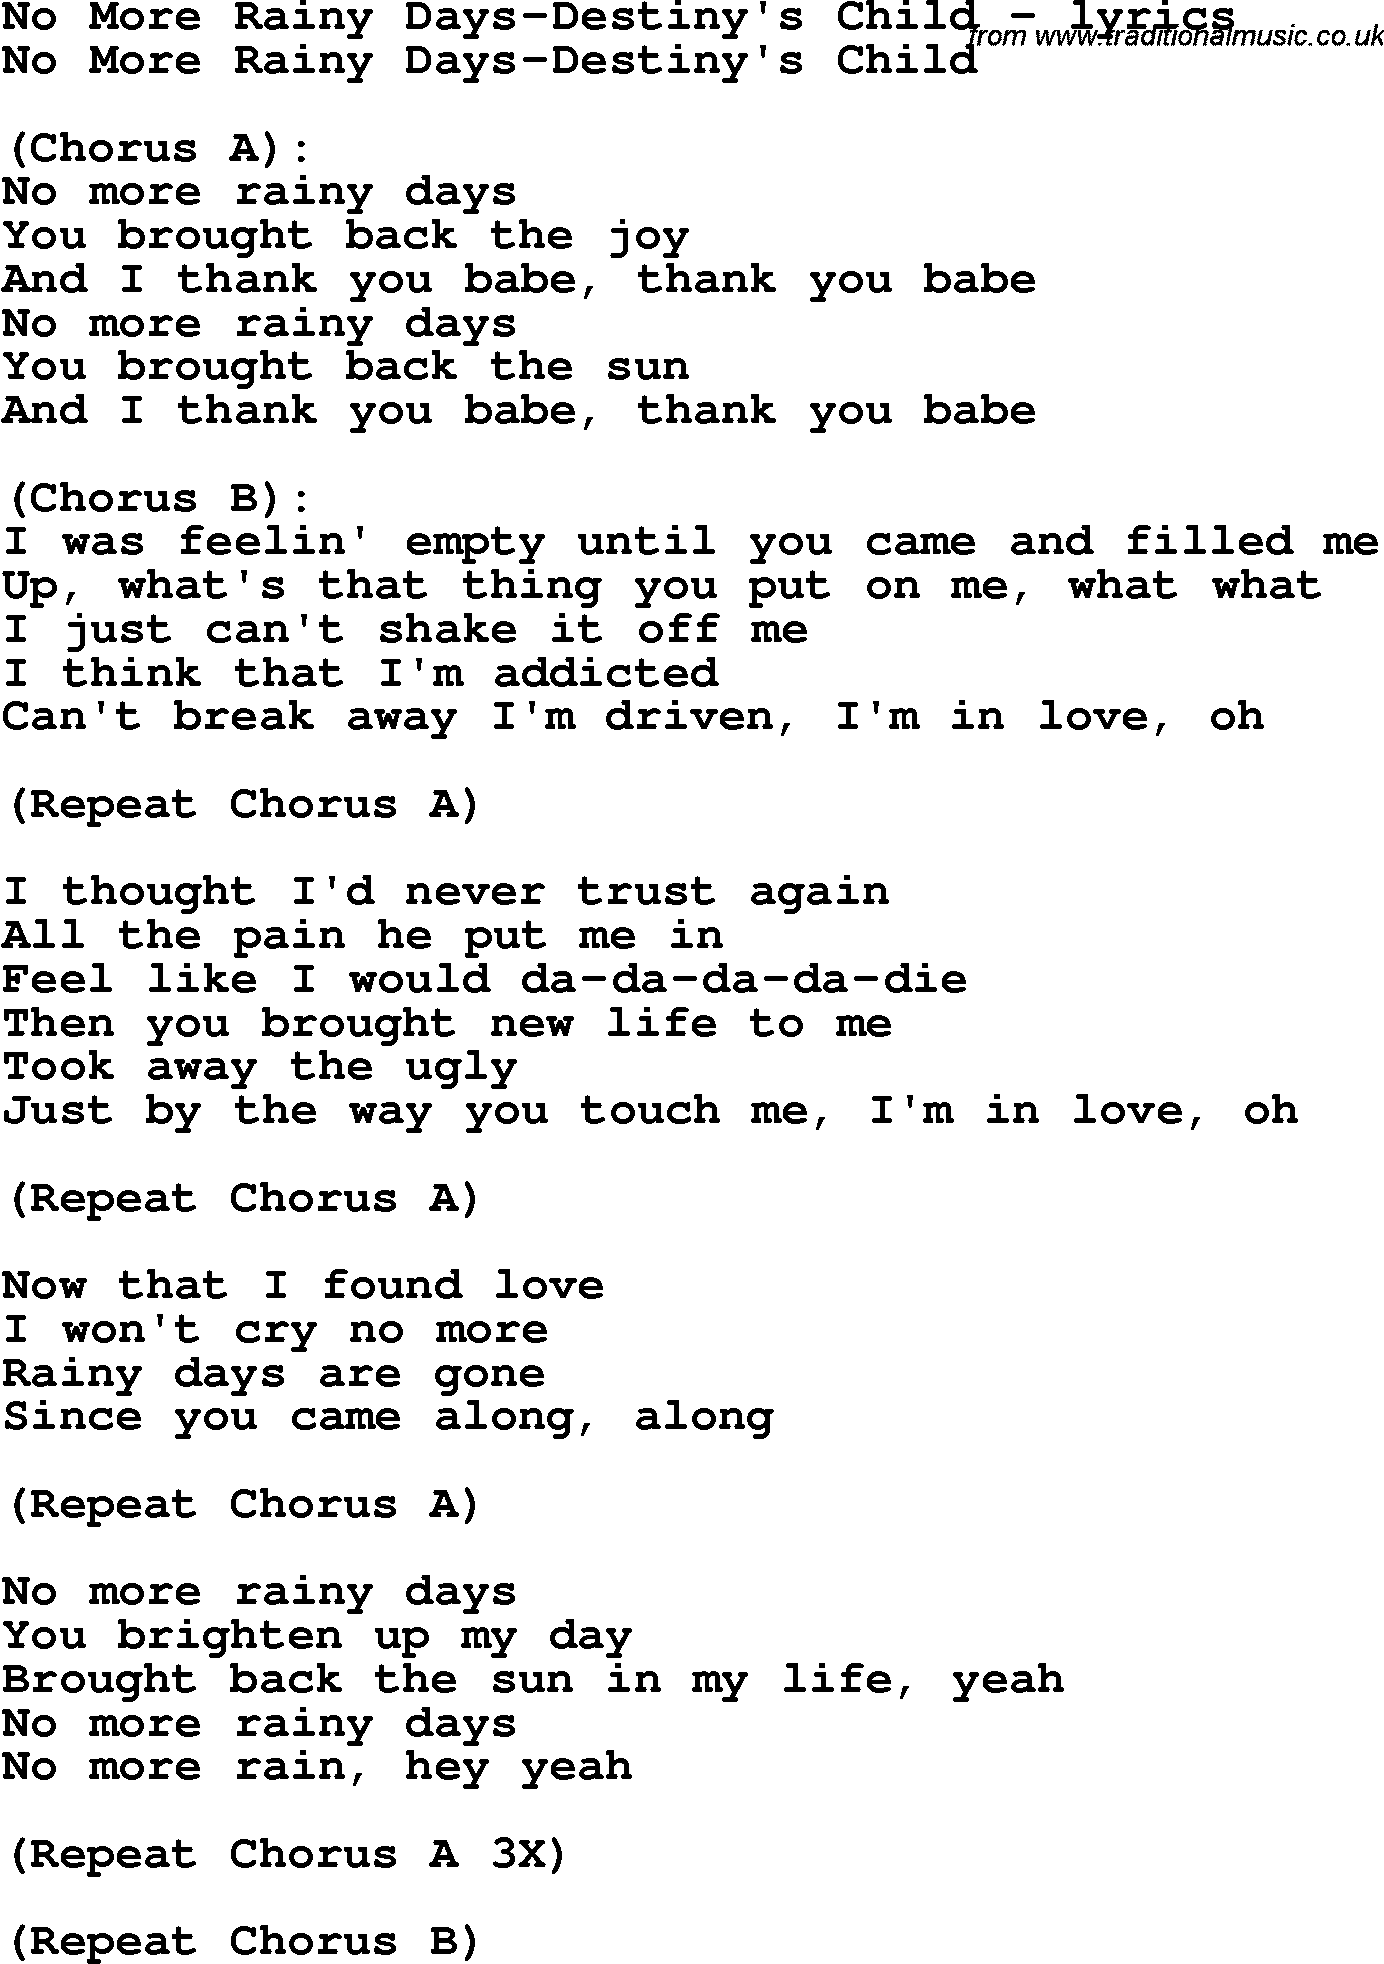 Rainy Days - song and lyrics by Gabri V